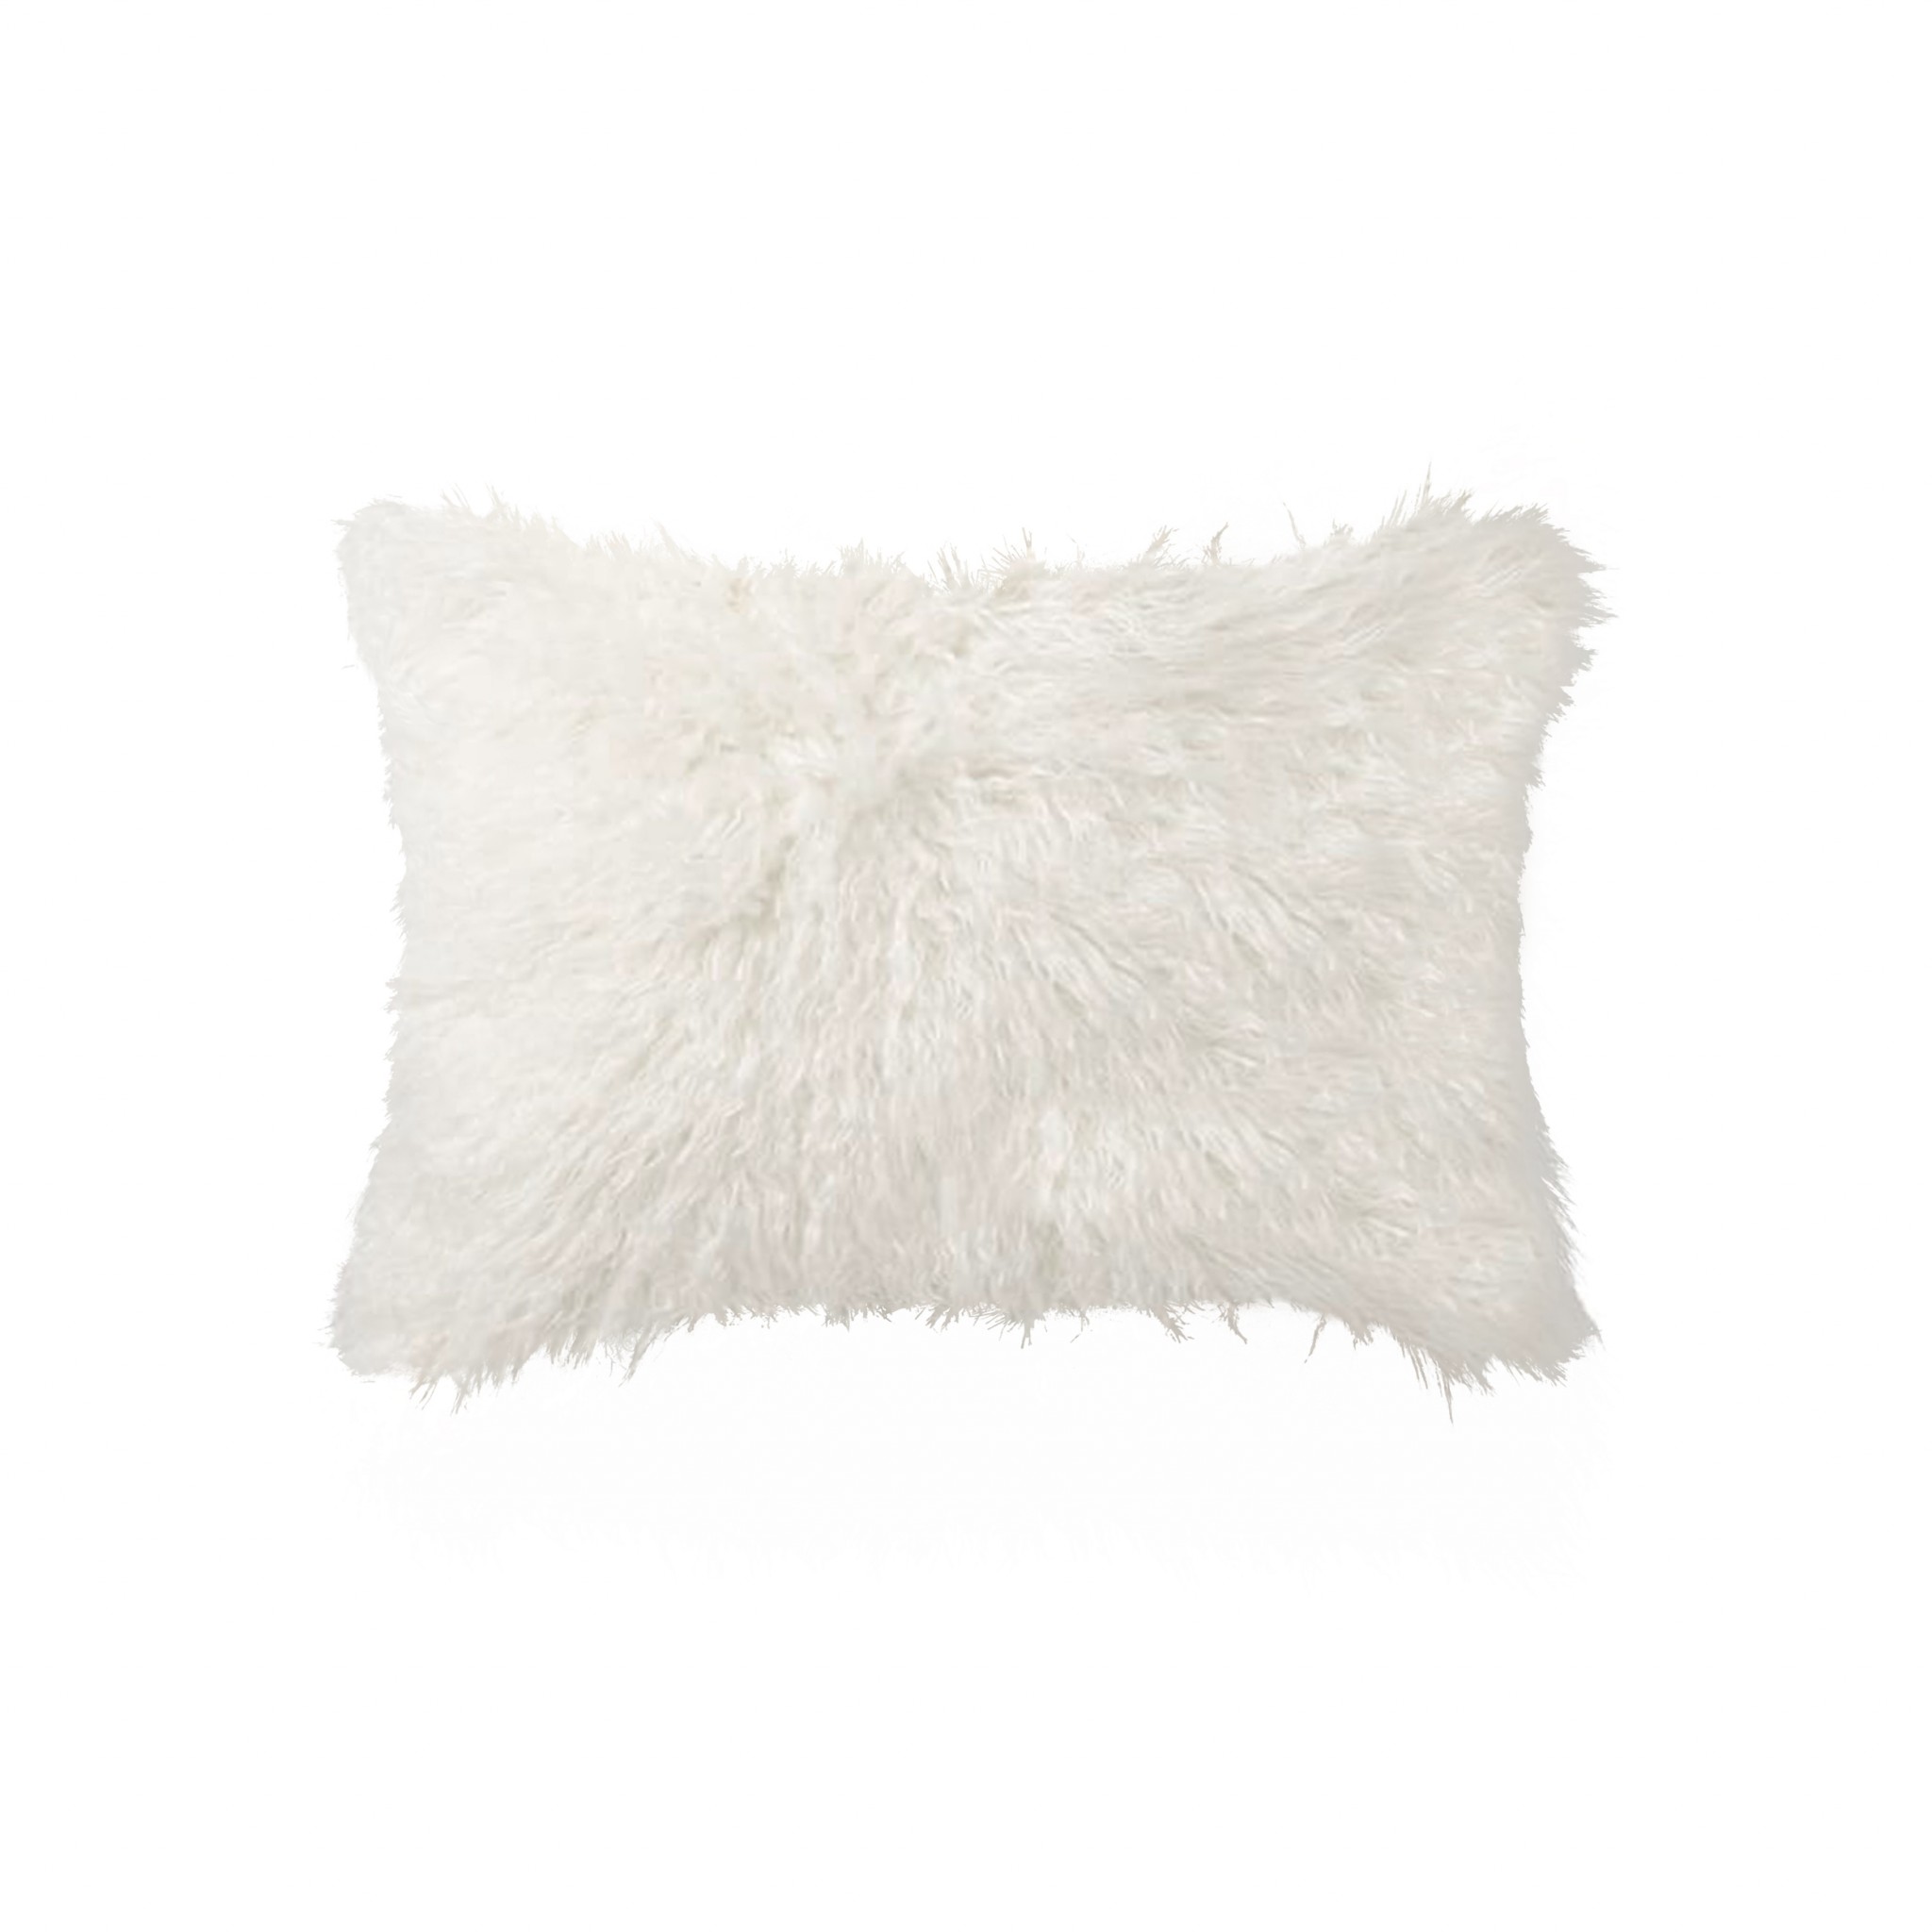 12" x 20" x 5" Off White Faux Fur - Pillow